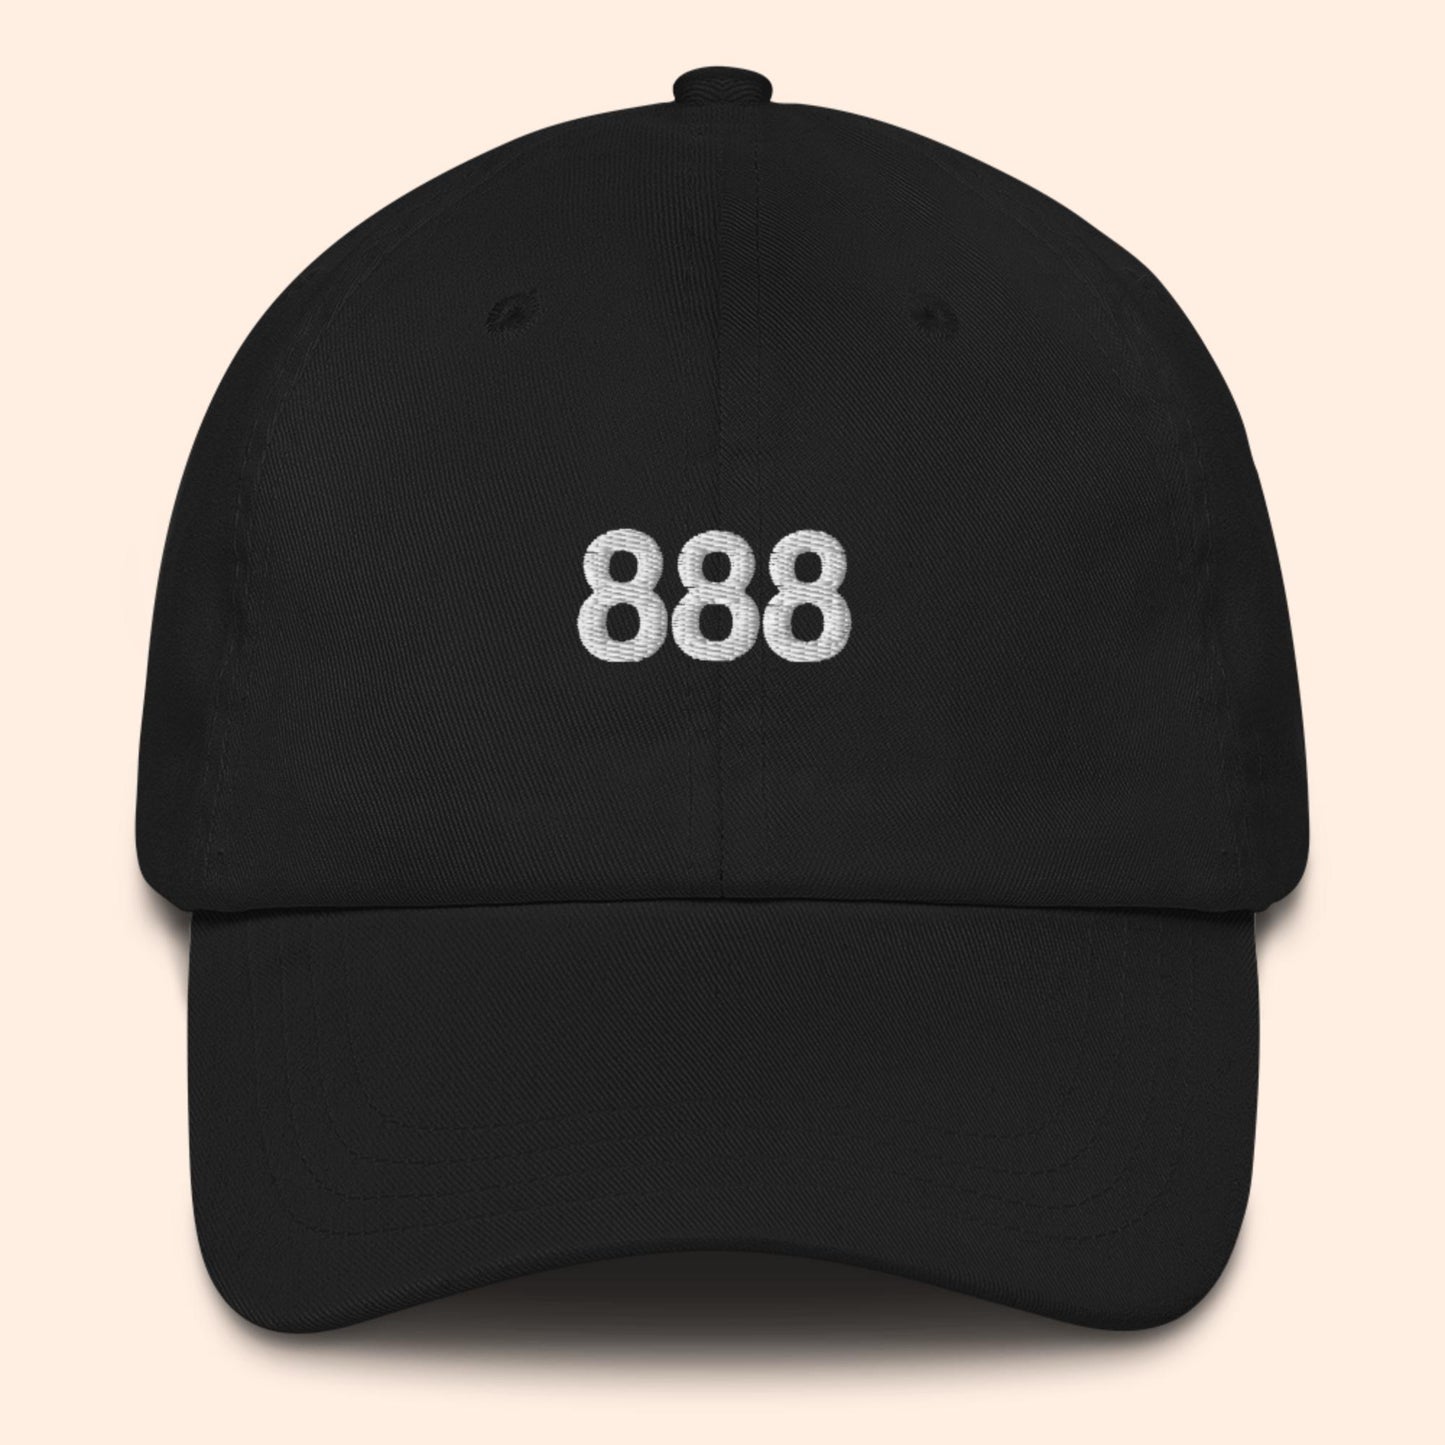 Sombrero con número de ángel 888